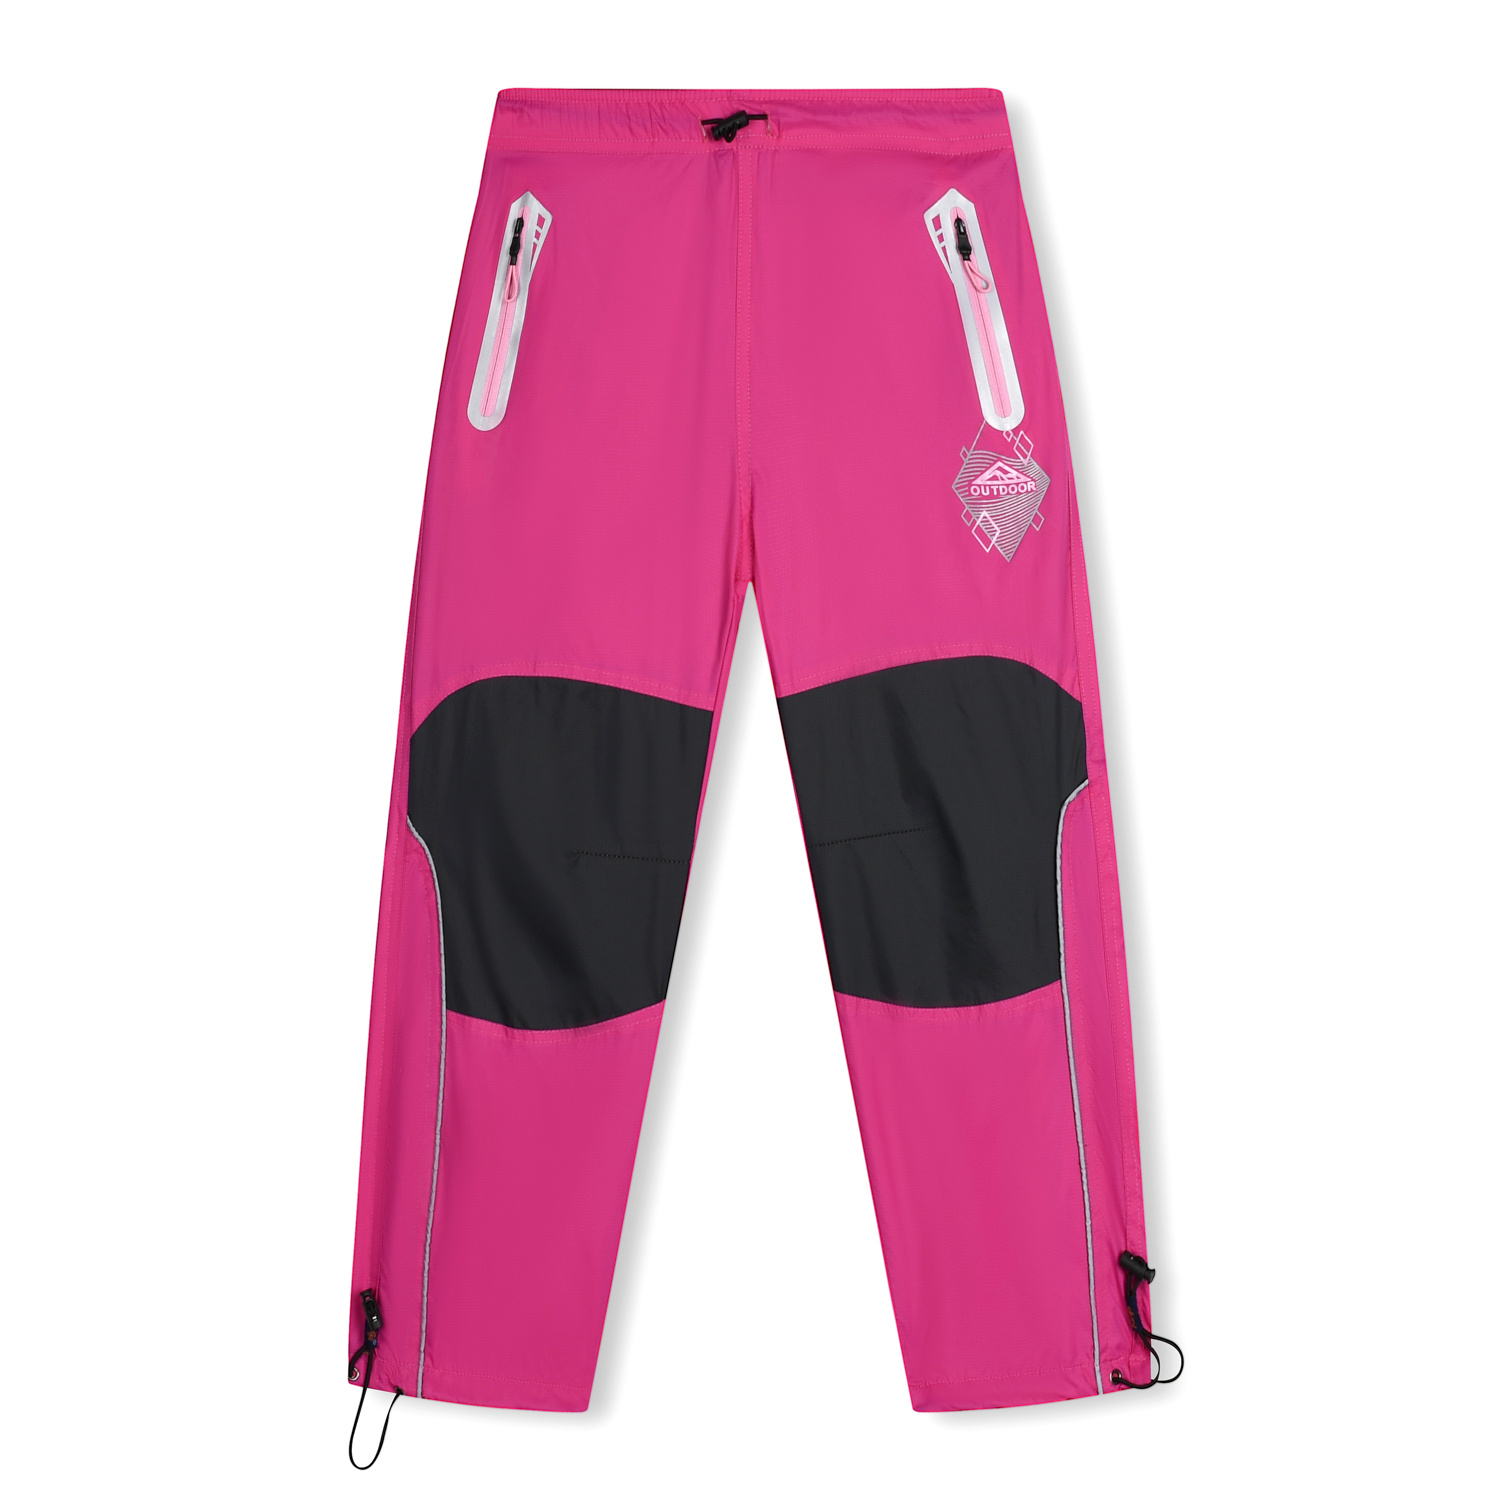 Dívčí šusťákové kalhoty - KUGO SK7739, růžová Barva: Růžová, Velikost: 128